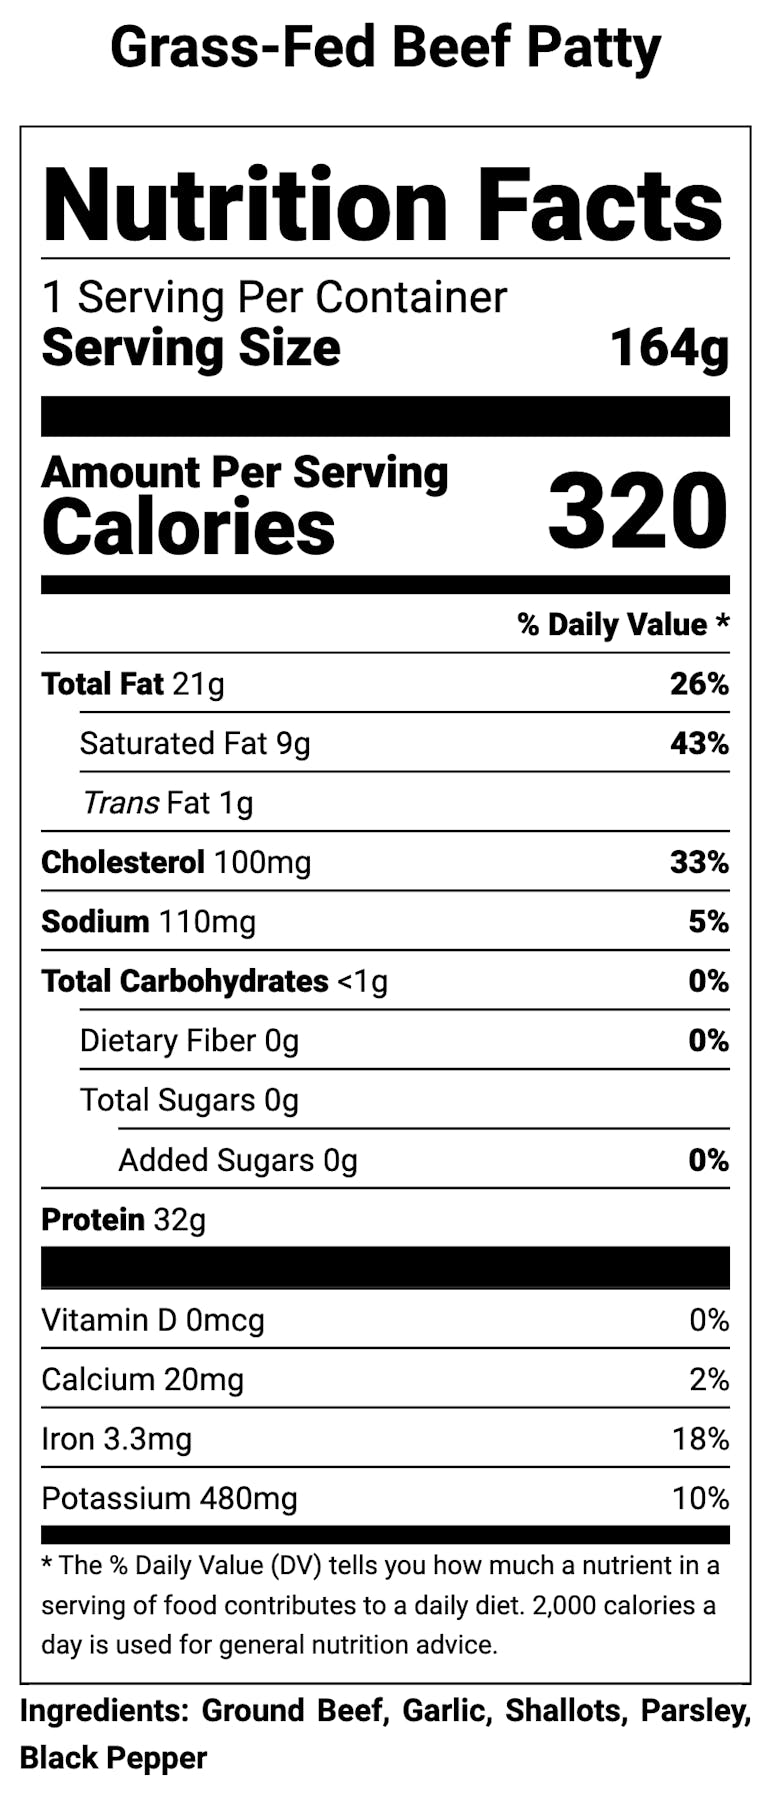 salt & pepper Nutrition Facts and Calories, Description